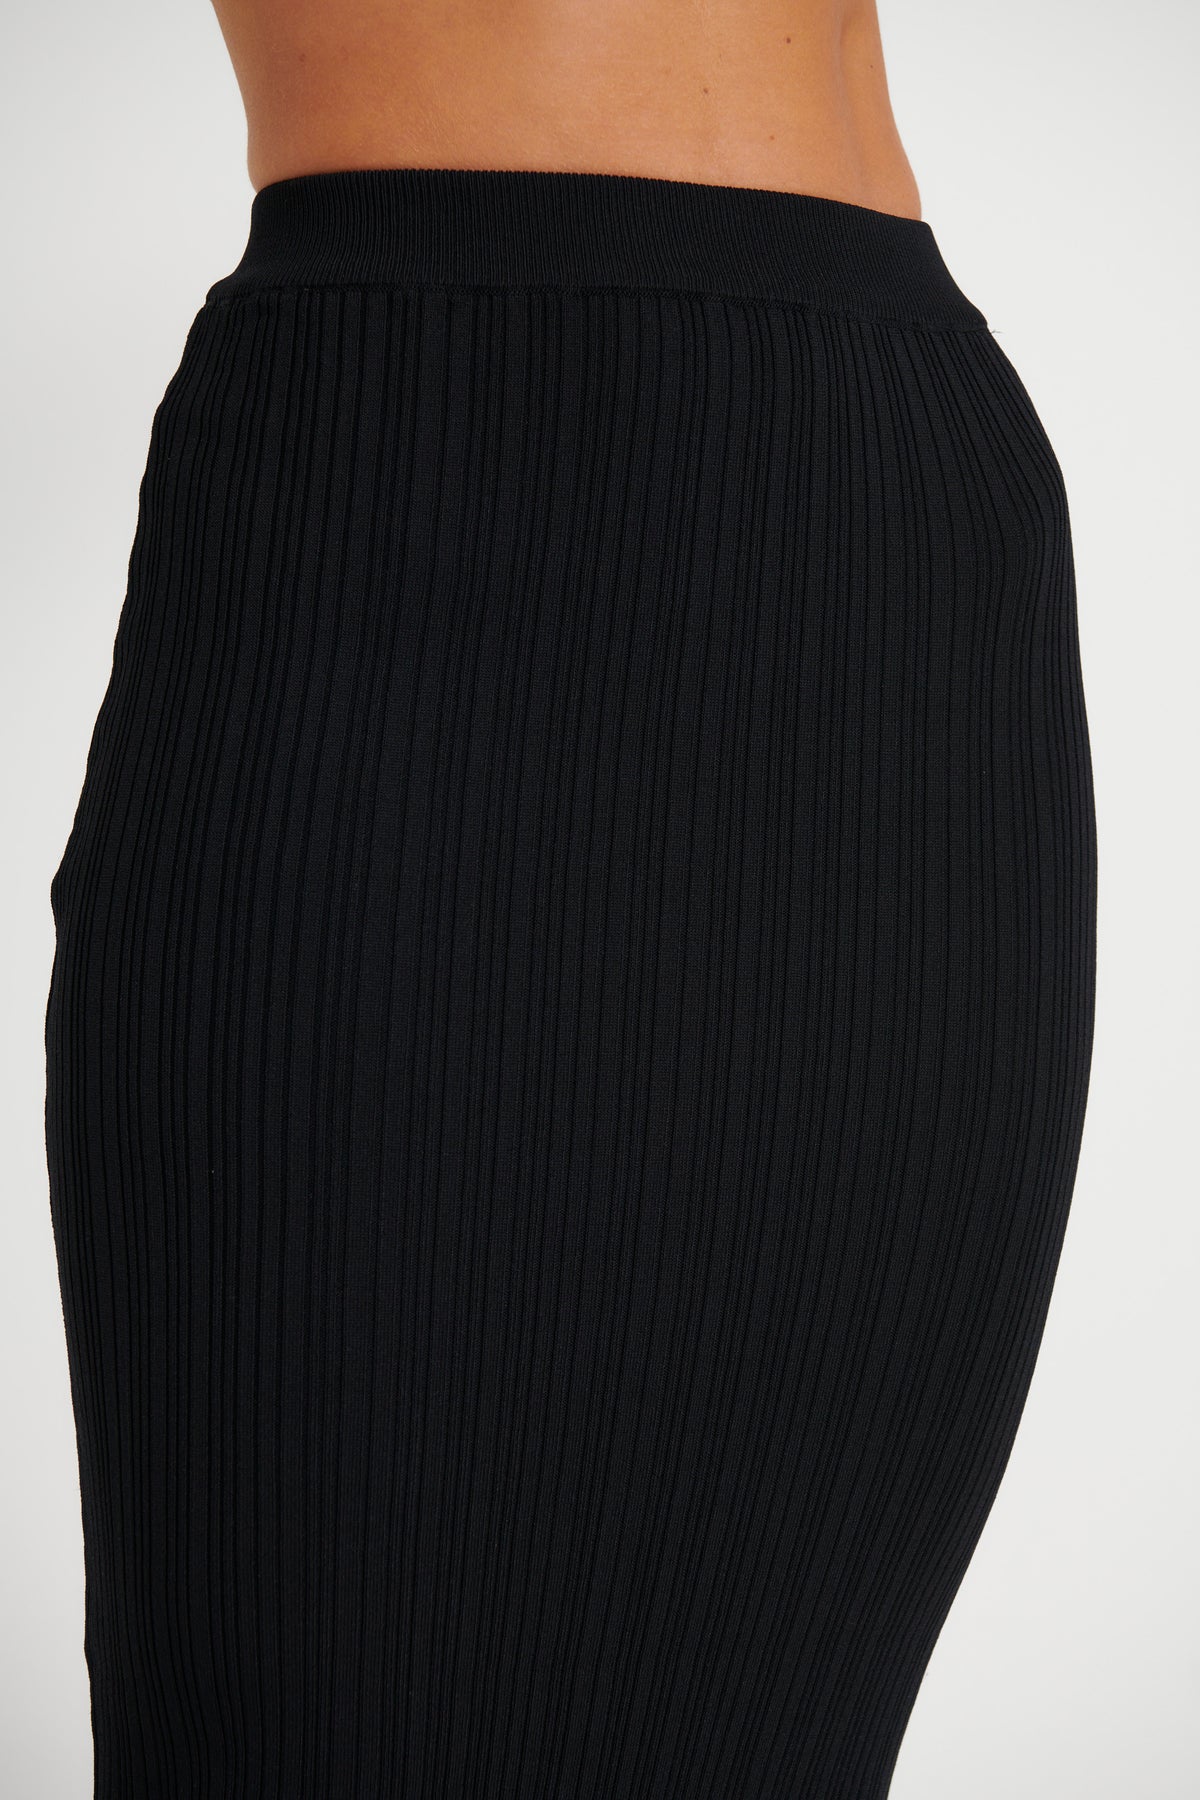 Bella Ribbed Skirt Black - FINAL SALE